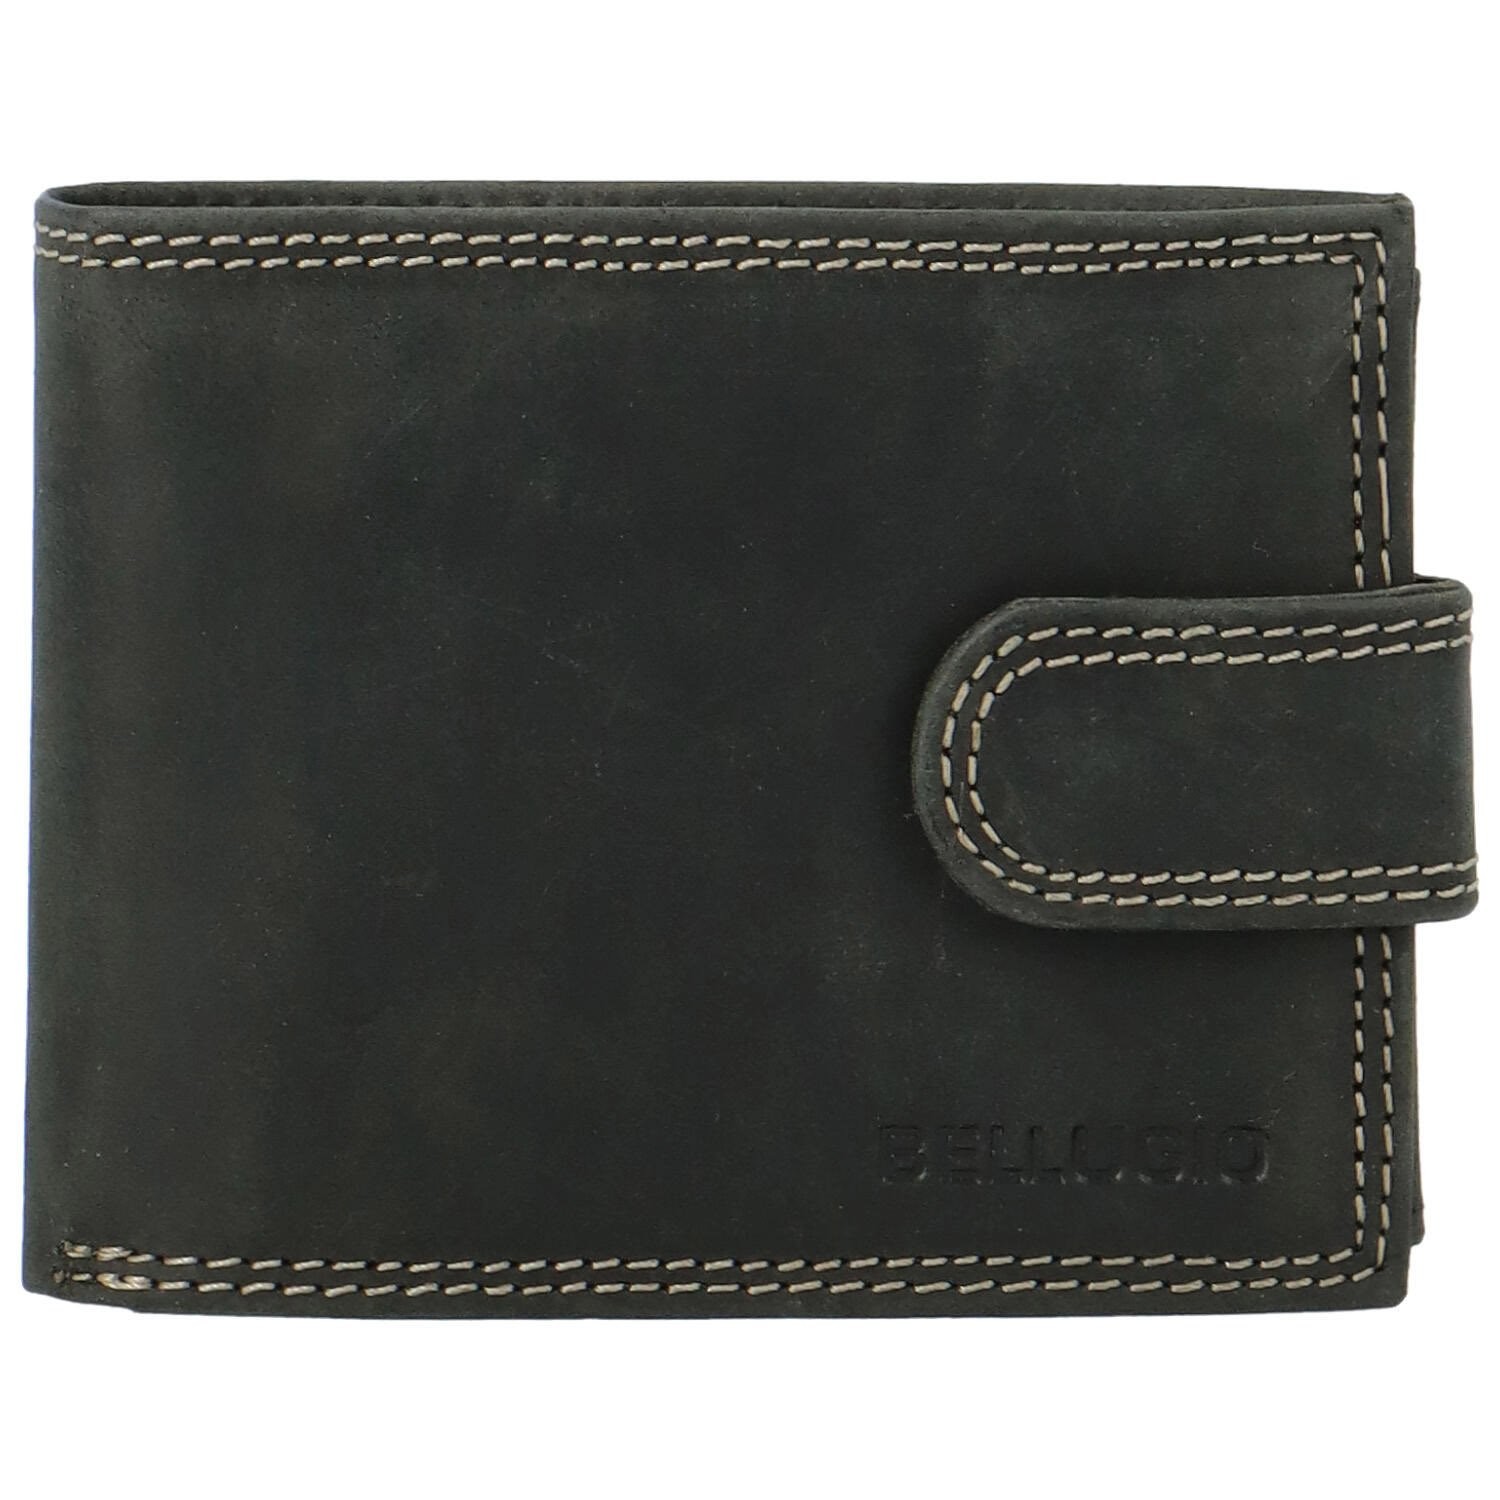 Pánská kožená peněženka černá - Bellugio Lokys černá